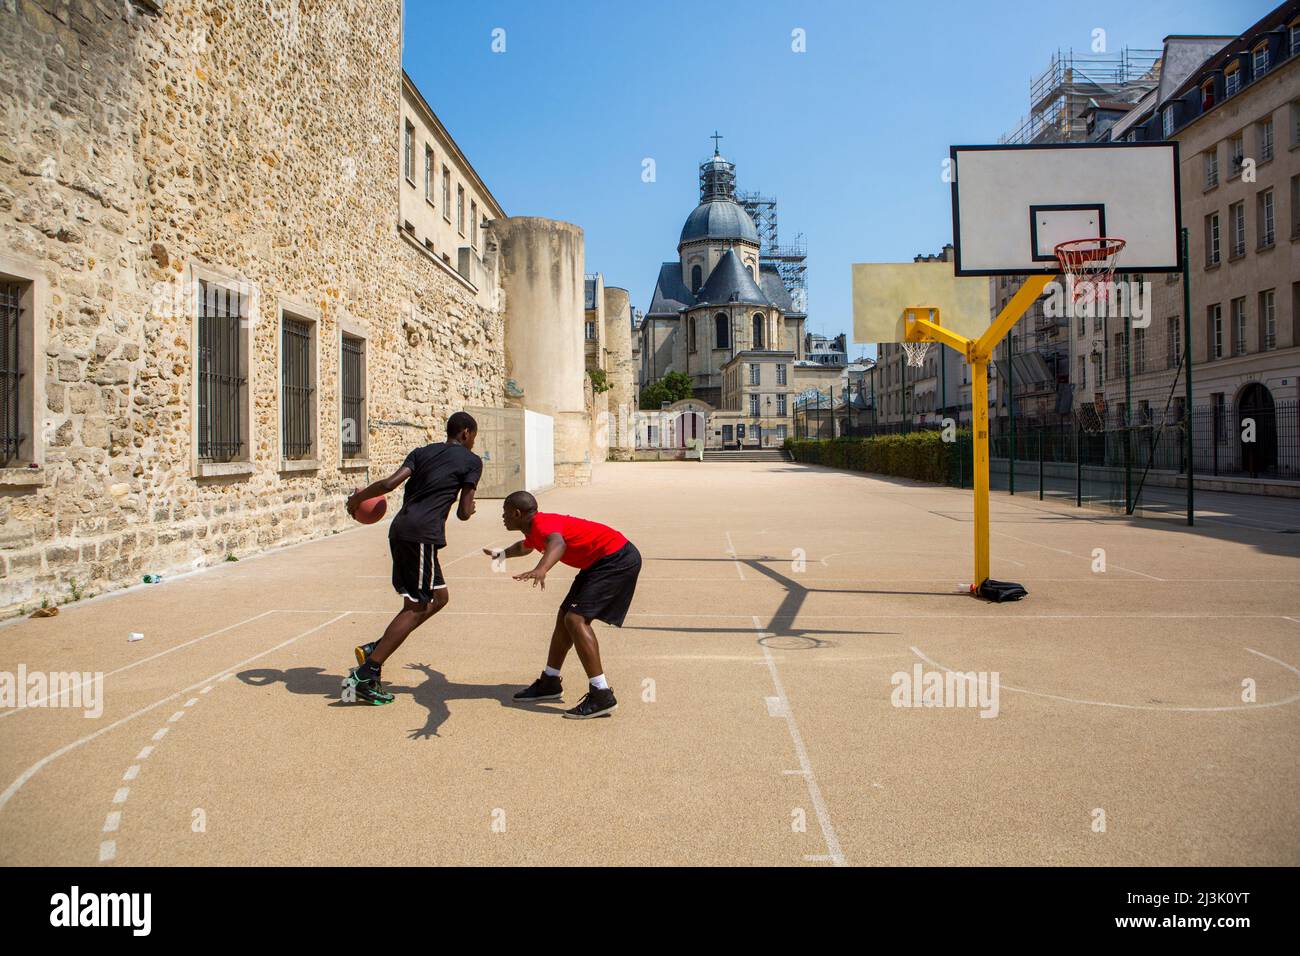 Les jeunes jouent au basket-ball dans la cour derrière l'église Saint-Paul Saint-Louis située dans le Marais, Paris, France, Paris, France Banque D'Images